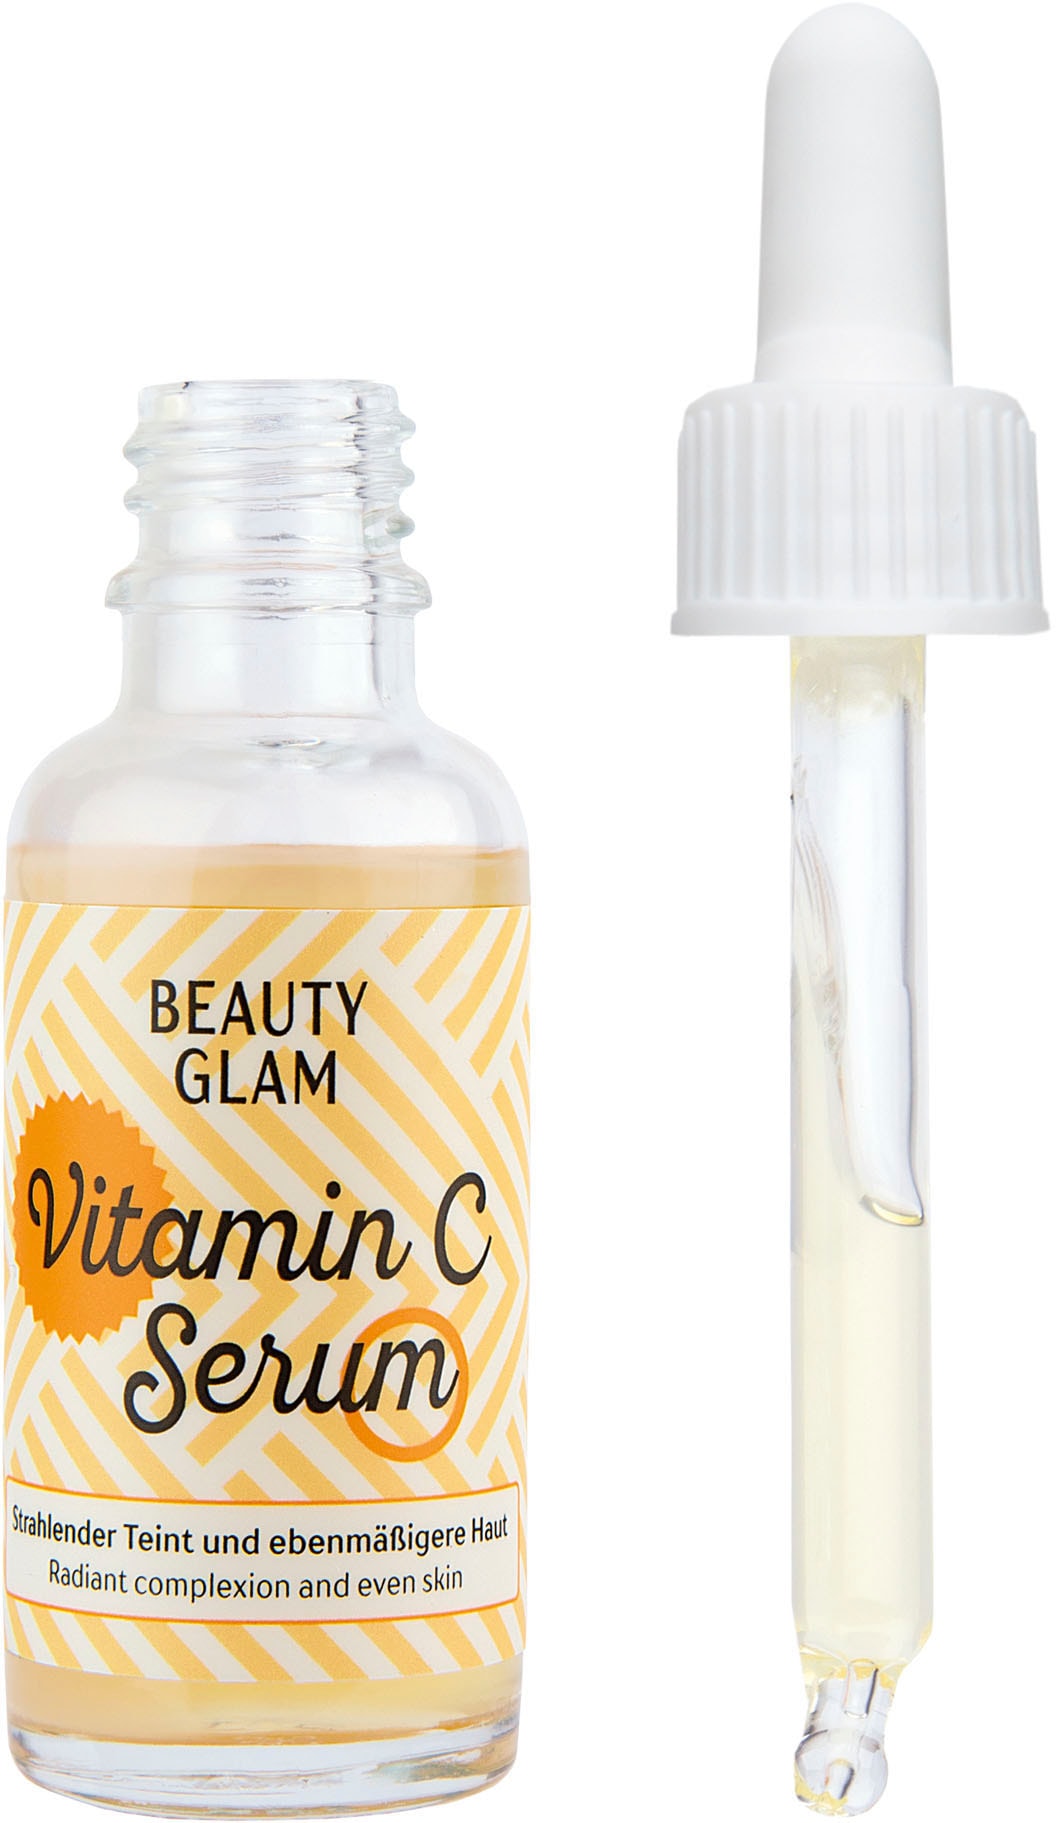 BEAUTY Vitamin »Beauty Serum« Gesichtsserum bei GLAM Glam C OTTOversand